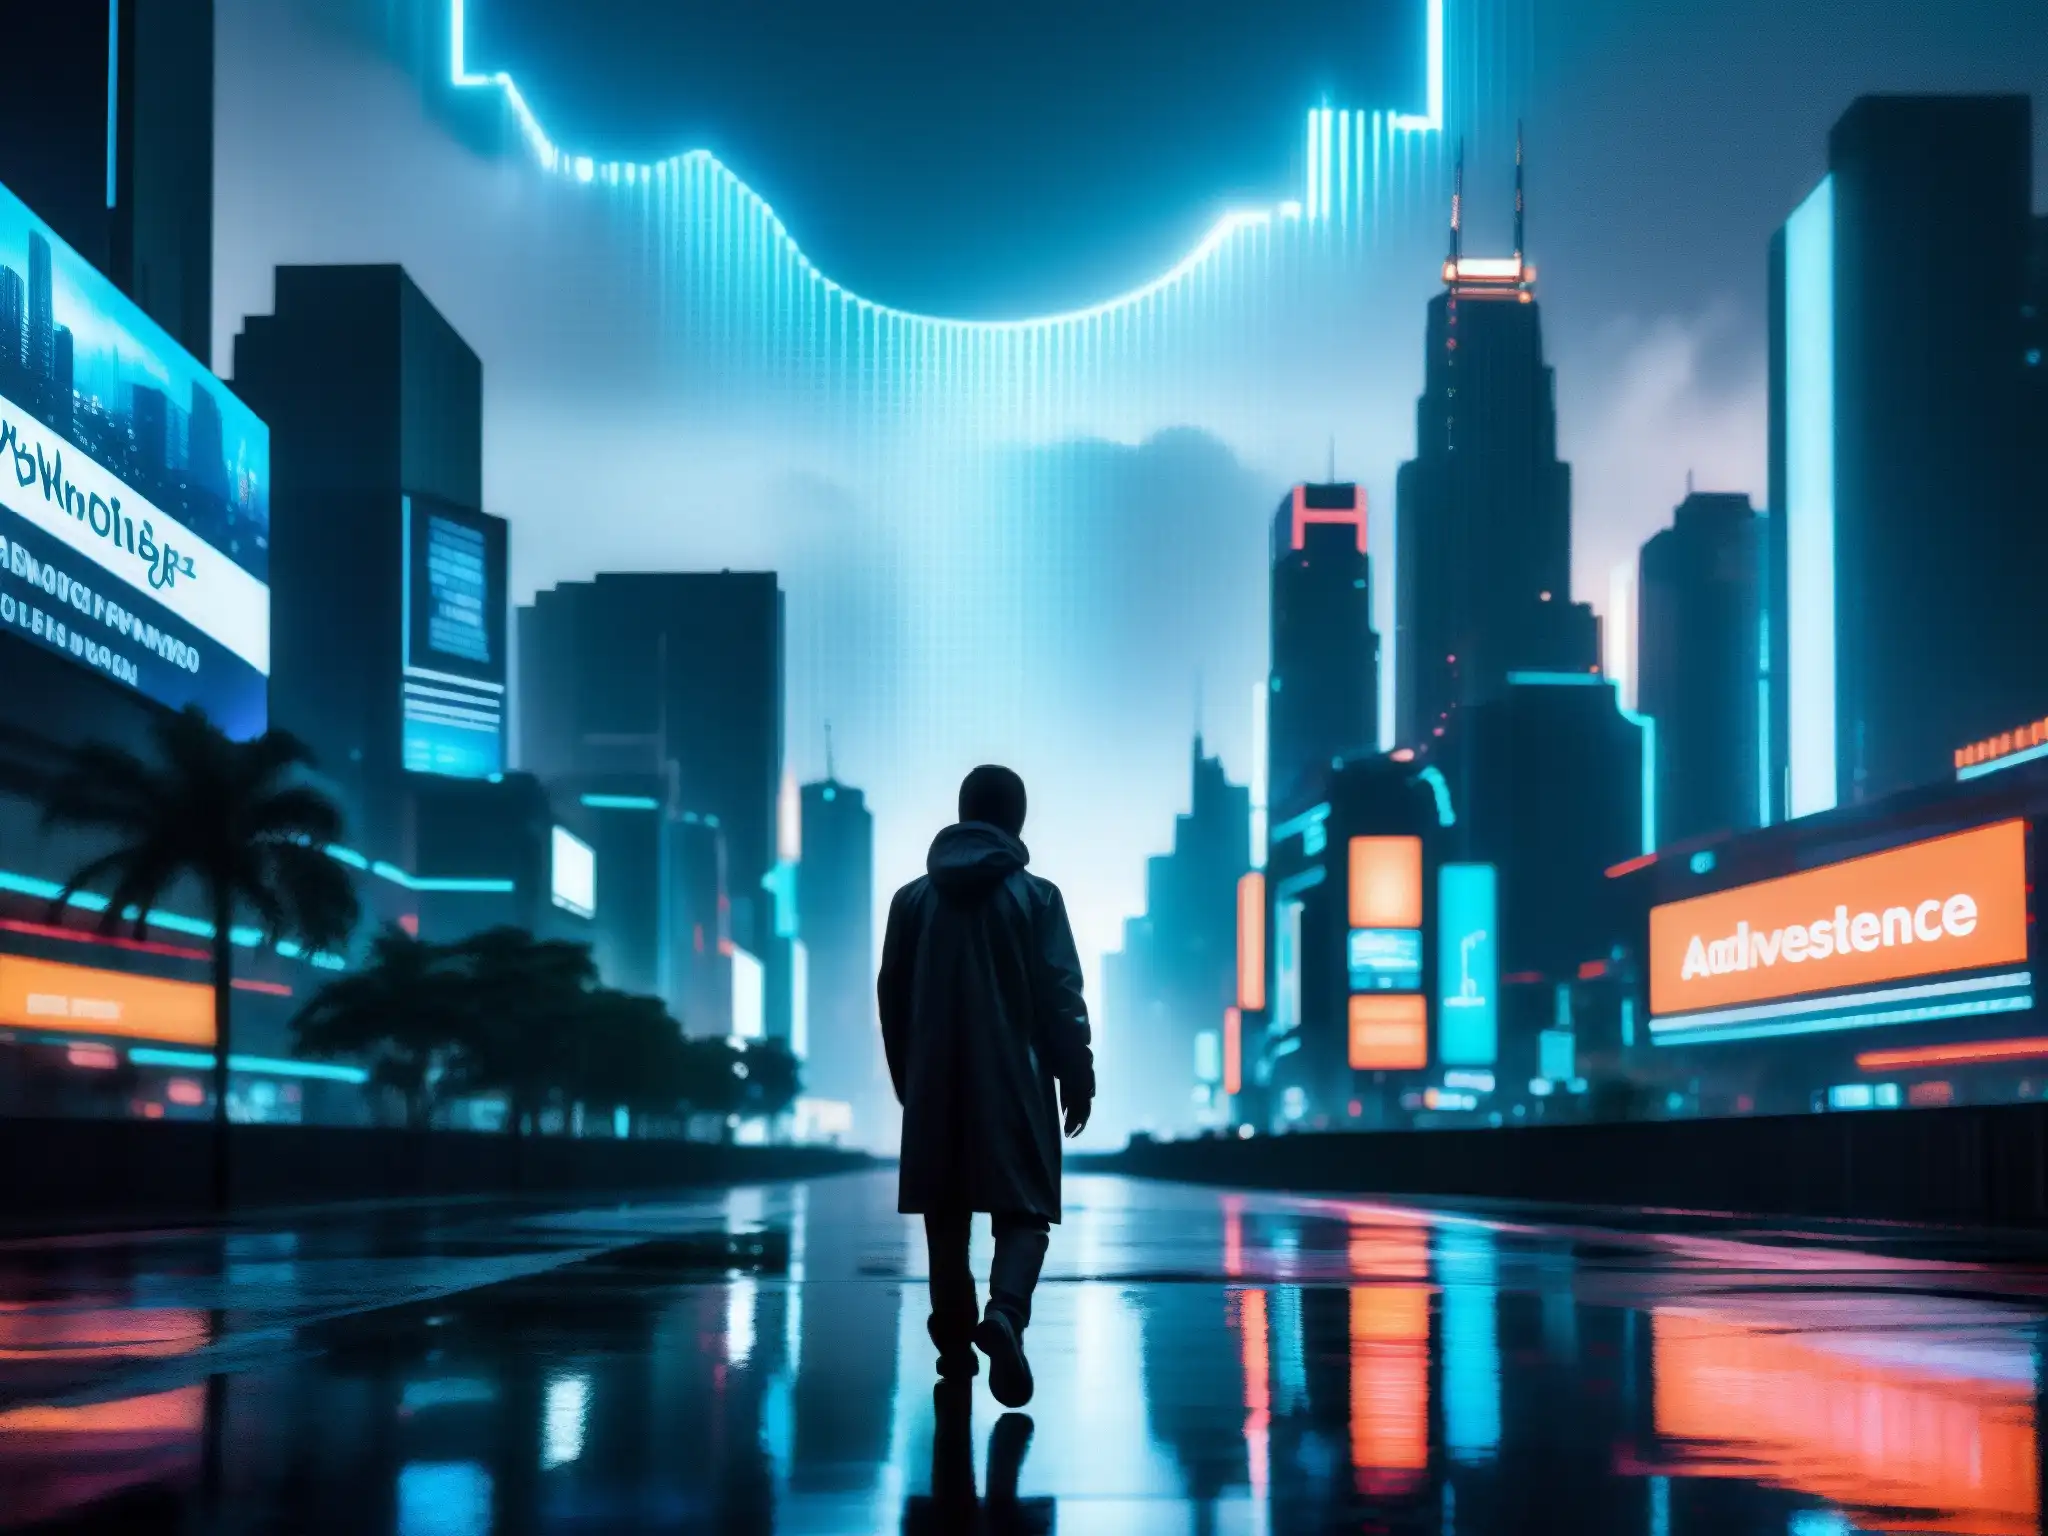 Silueta misteriosa en ciudad futurista con leyendas urbanas inteligencia artificial